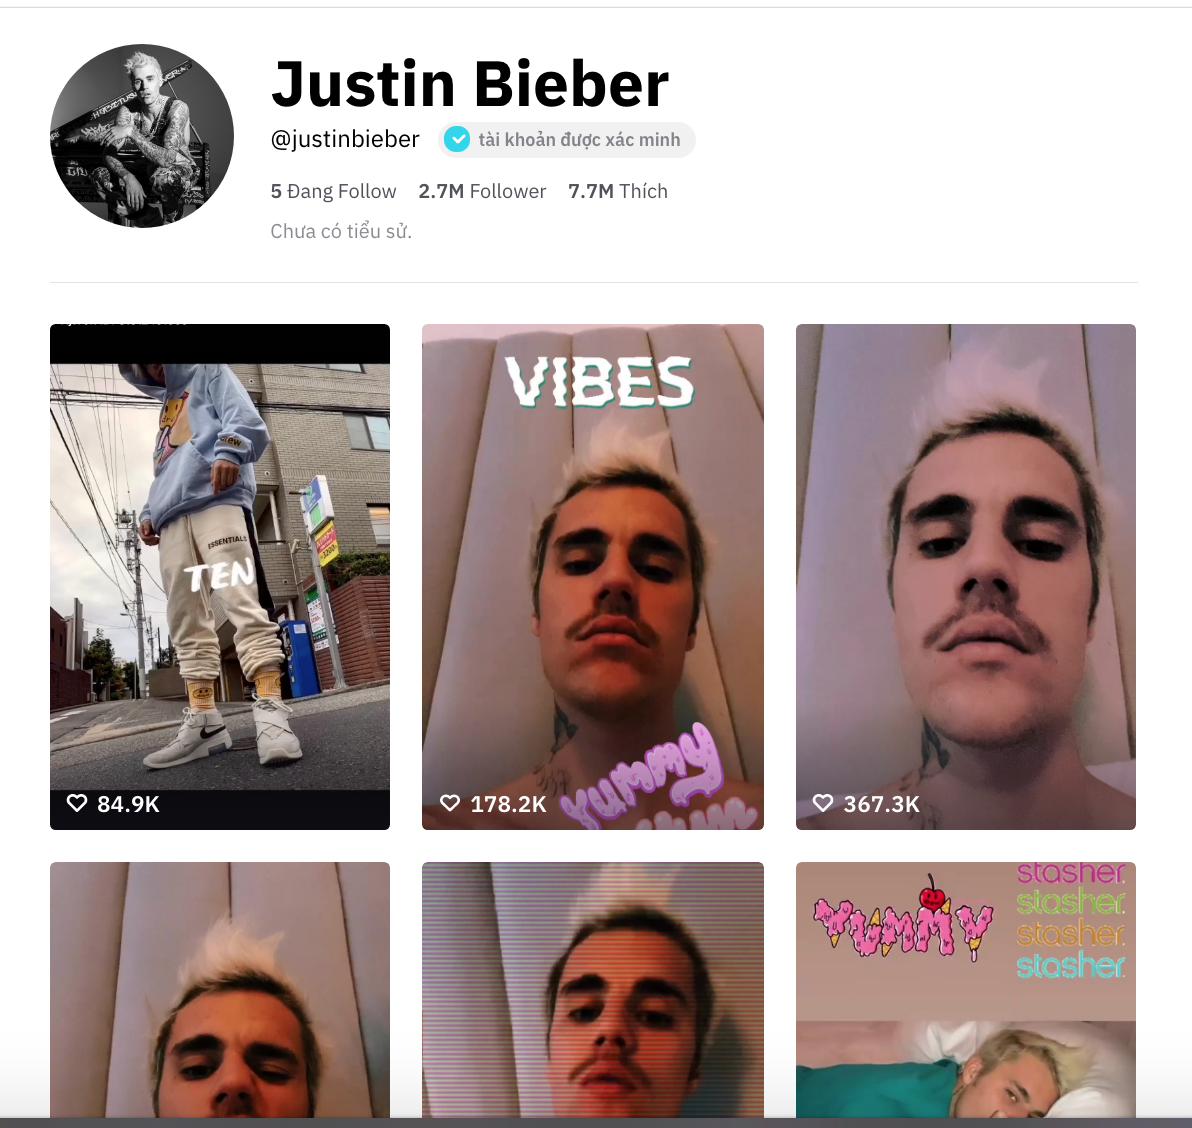 Justin Bieber cũng chơi hiệu ứng "#morph" - ZgpfMNPxOyD6G hDqEl5WuVh86PWbZwQLQqZUNd2k9BdkOkGLKPmQSvqpHxPA2HTnWjt oCT8c8qTwN FjT68bkO59b OWyQB8wmmq kPFrAnzs0 bmKggruUiUCTQ2Fj6I9MA8ZcJi N jpLQ